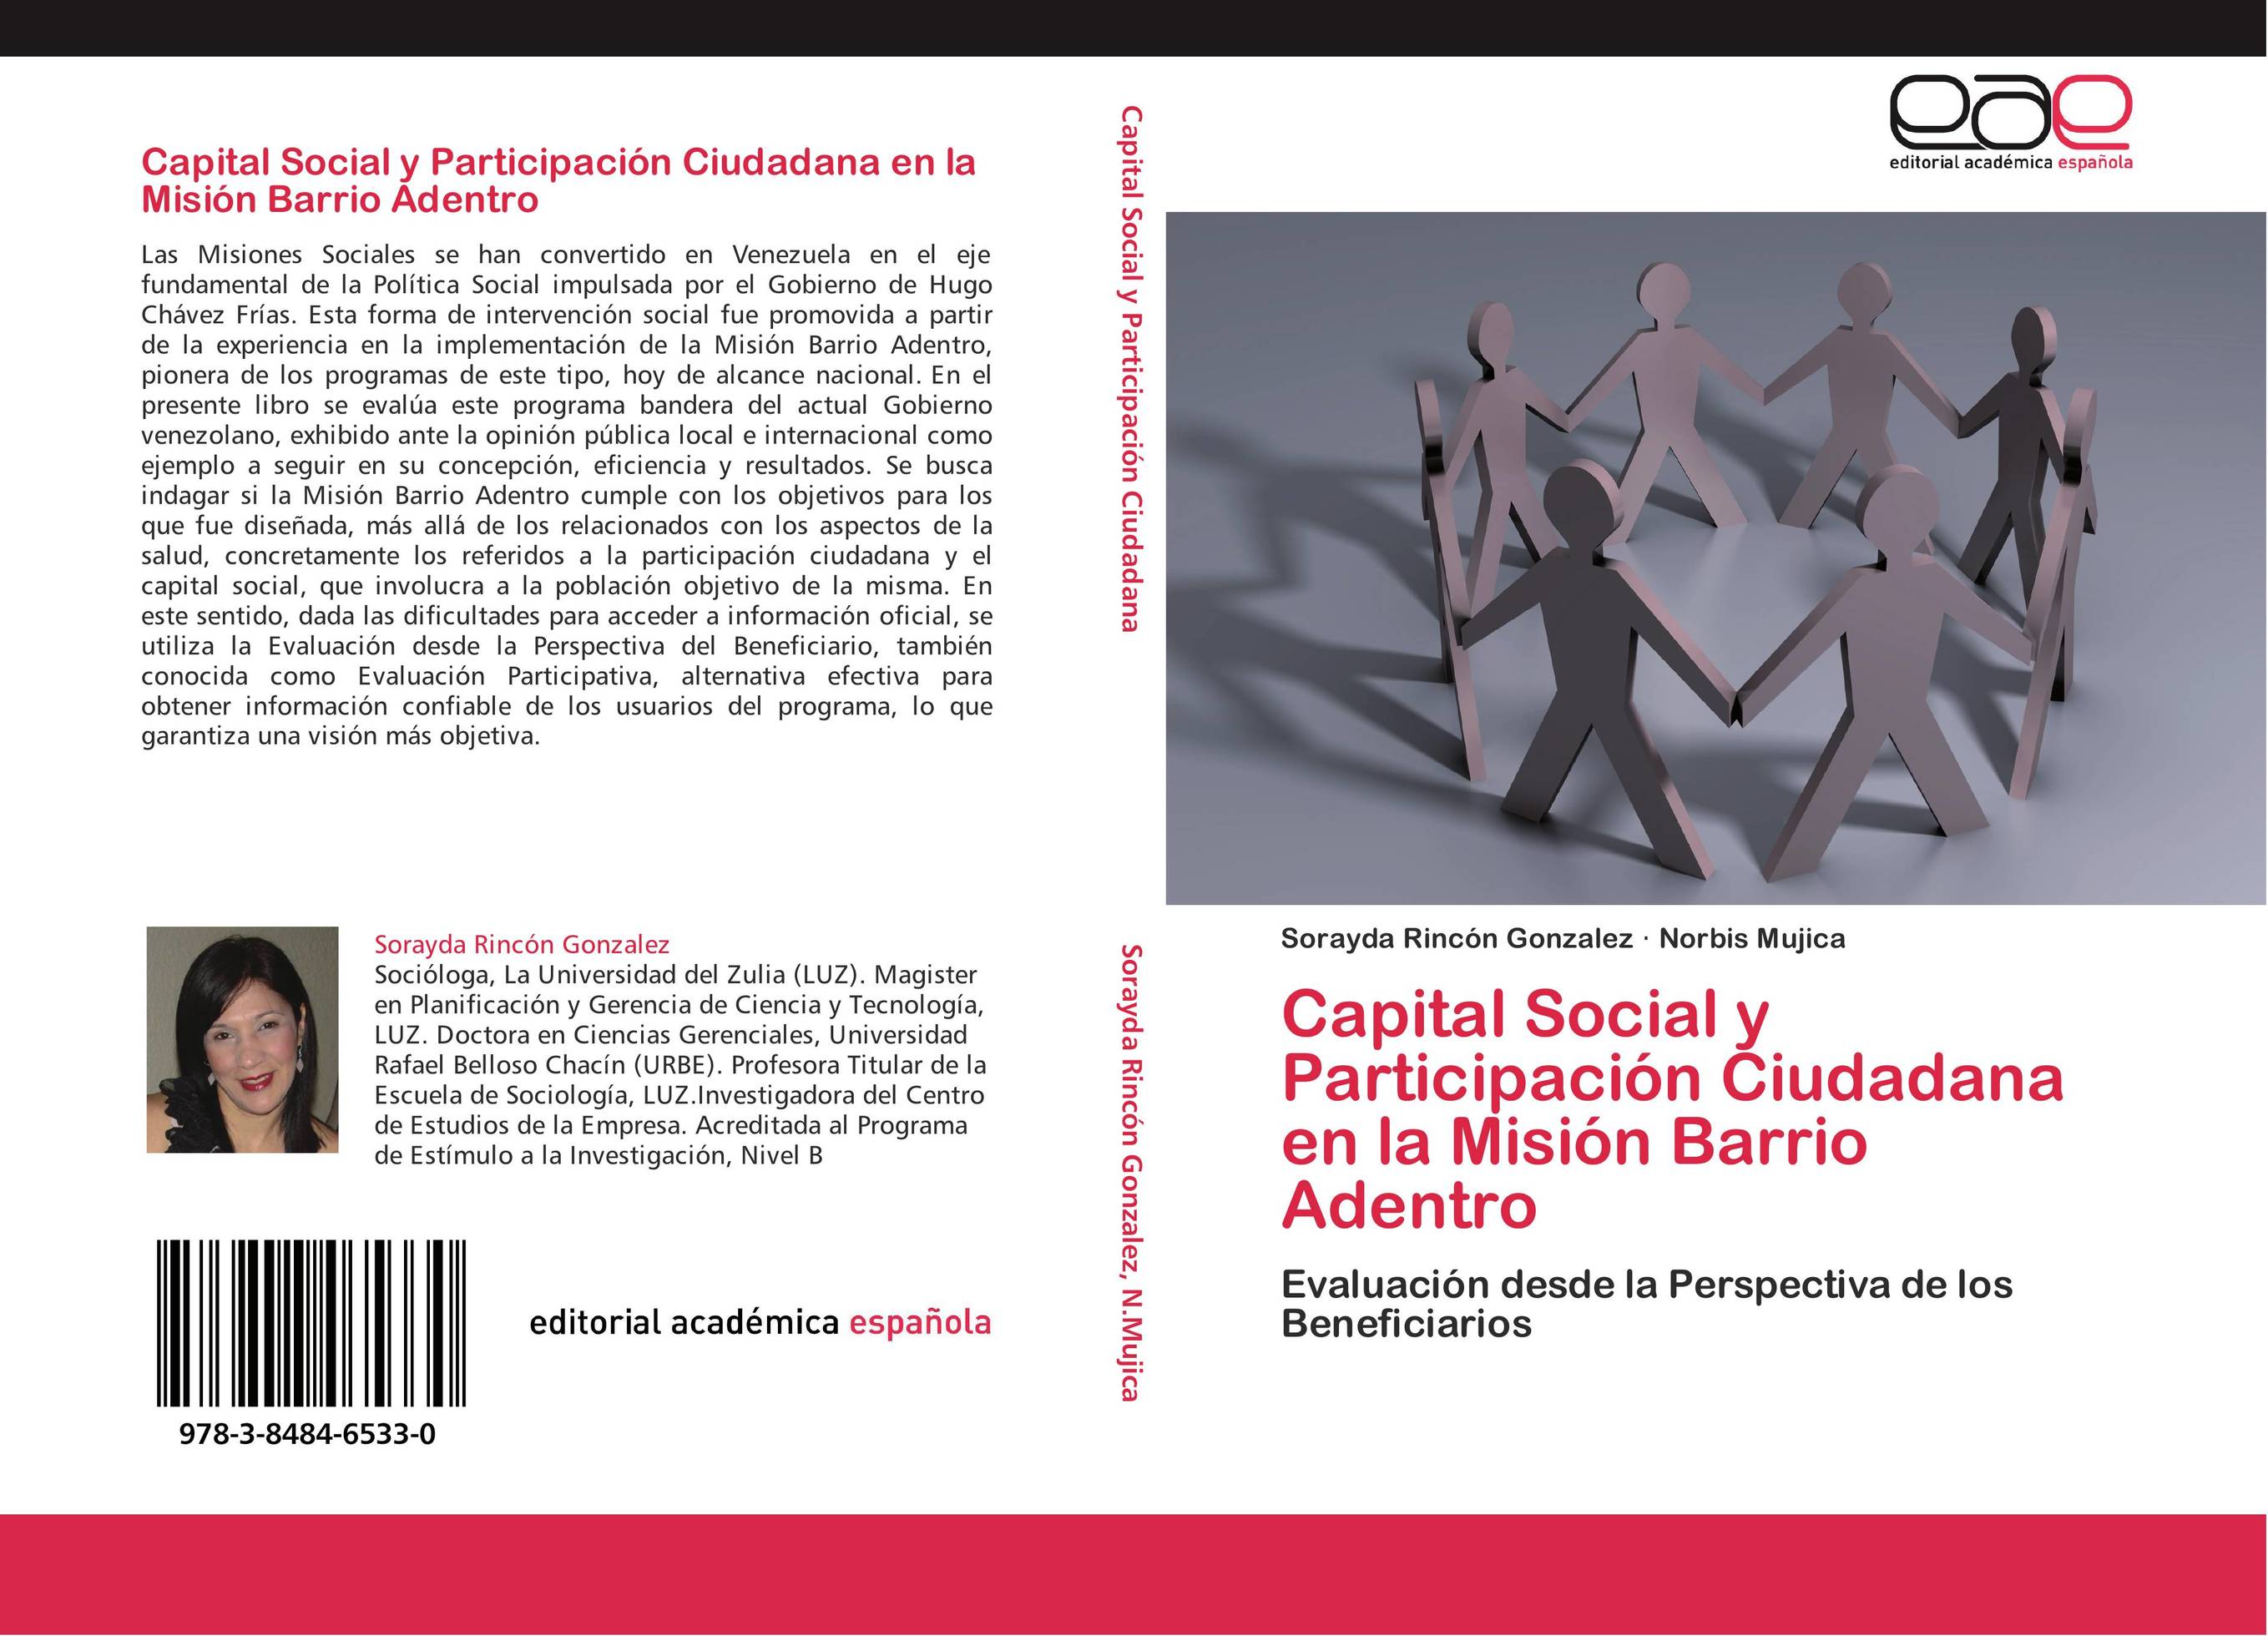 Capital Social y Participación Ciudadana en la Misión Barrio Adentro